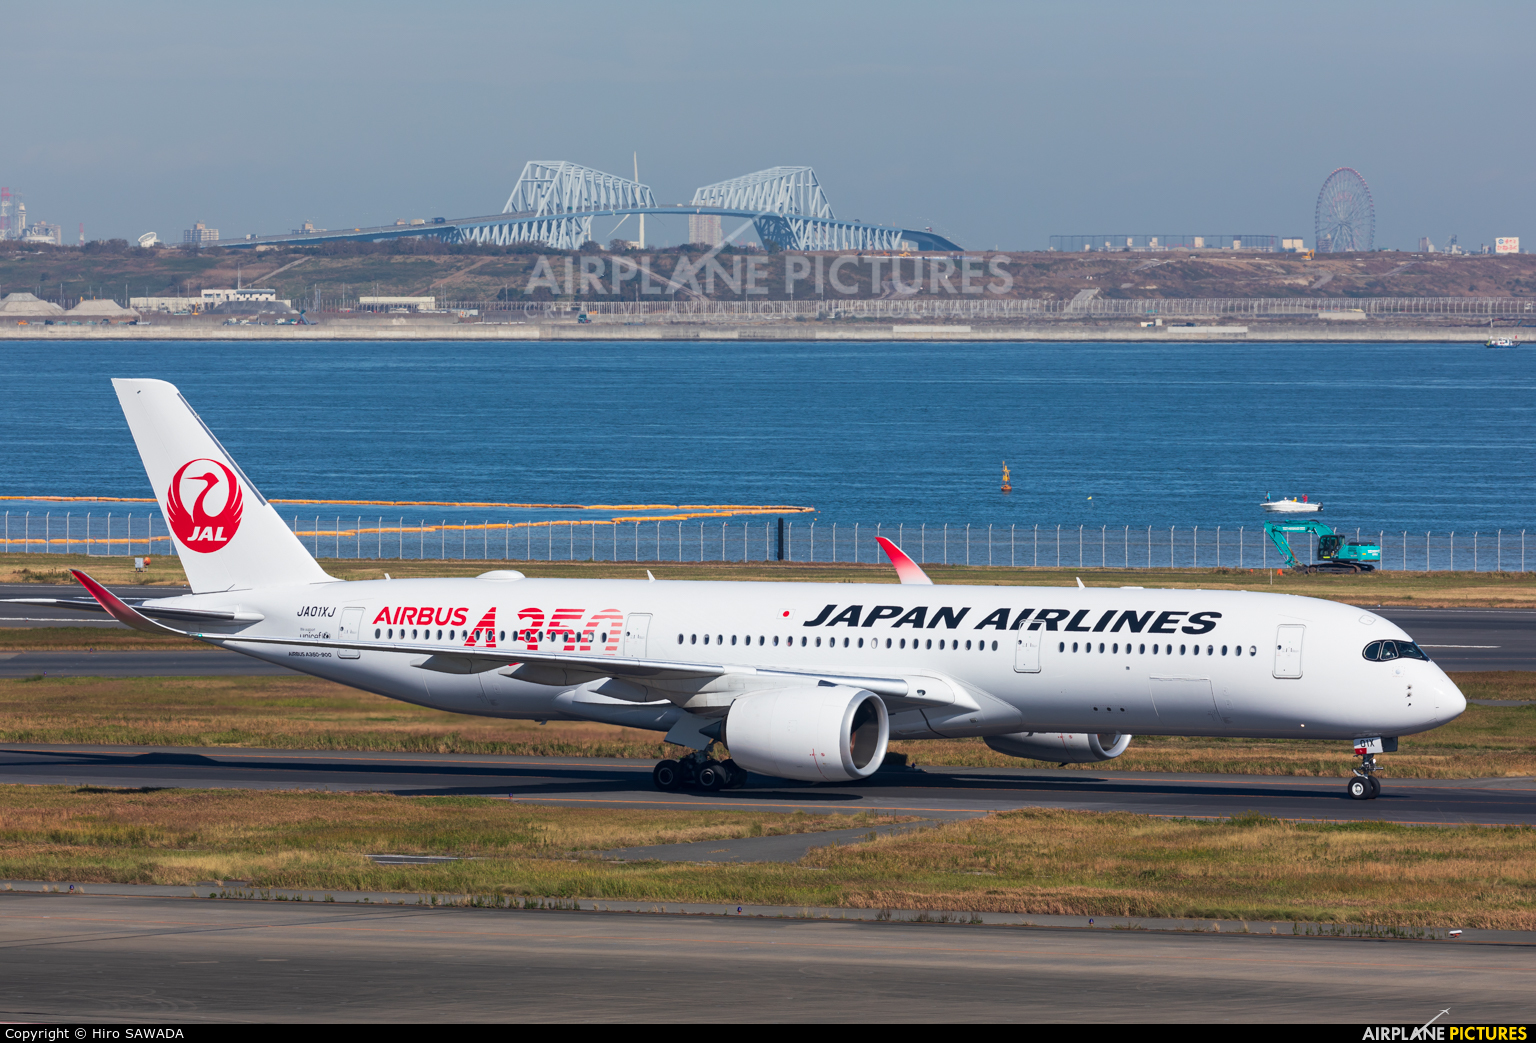 JAL - Japan Airlines JA01XJ aircraft at Tokyo - Haneda Intl